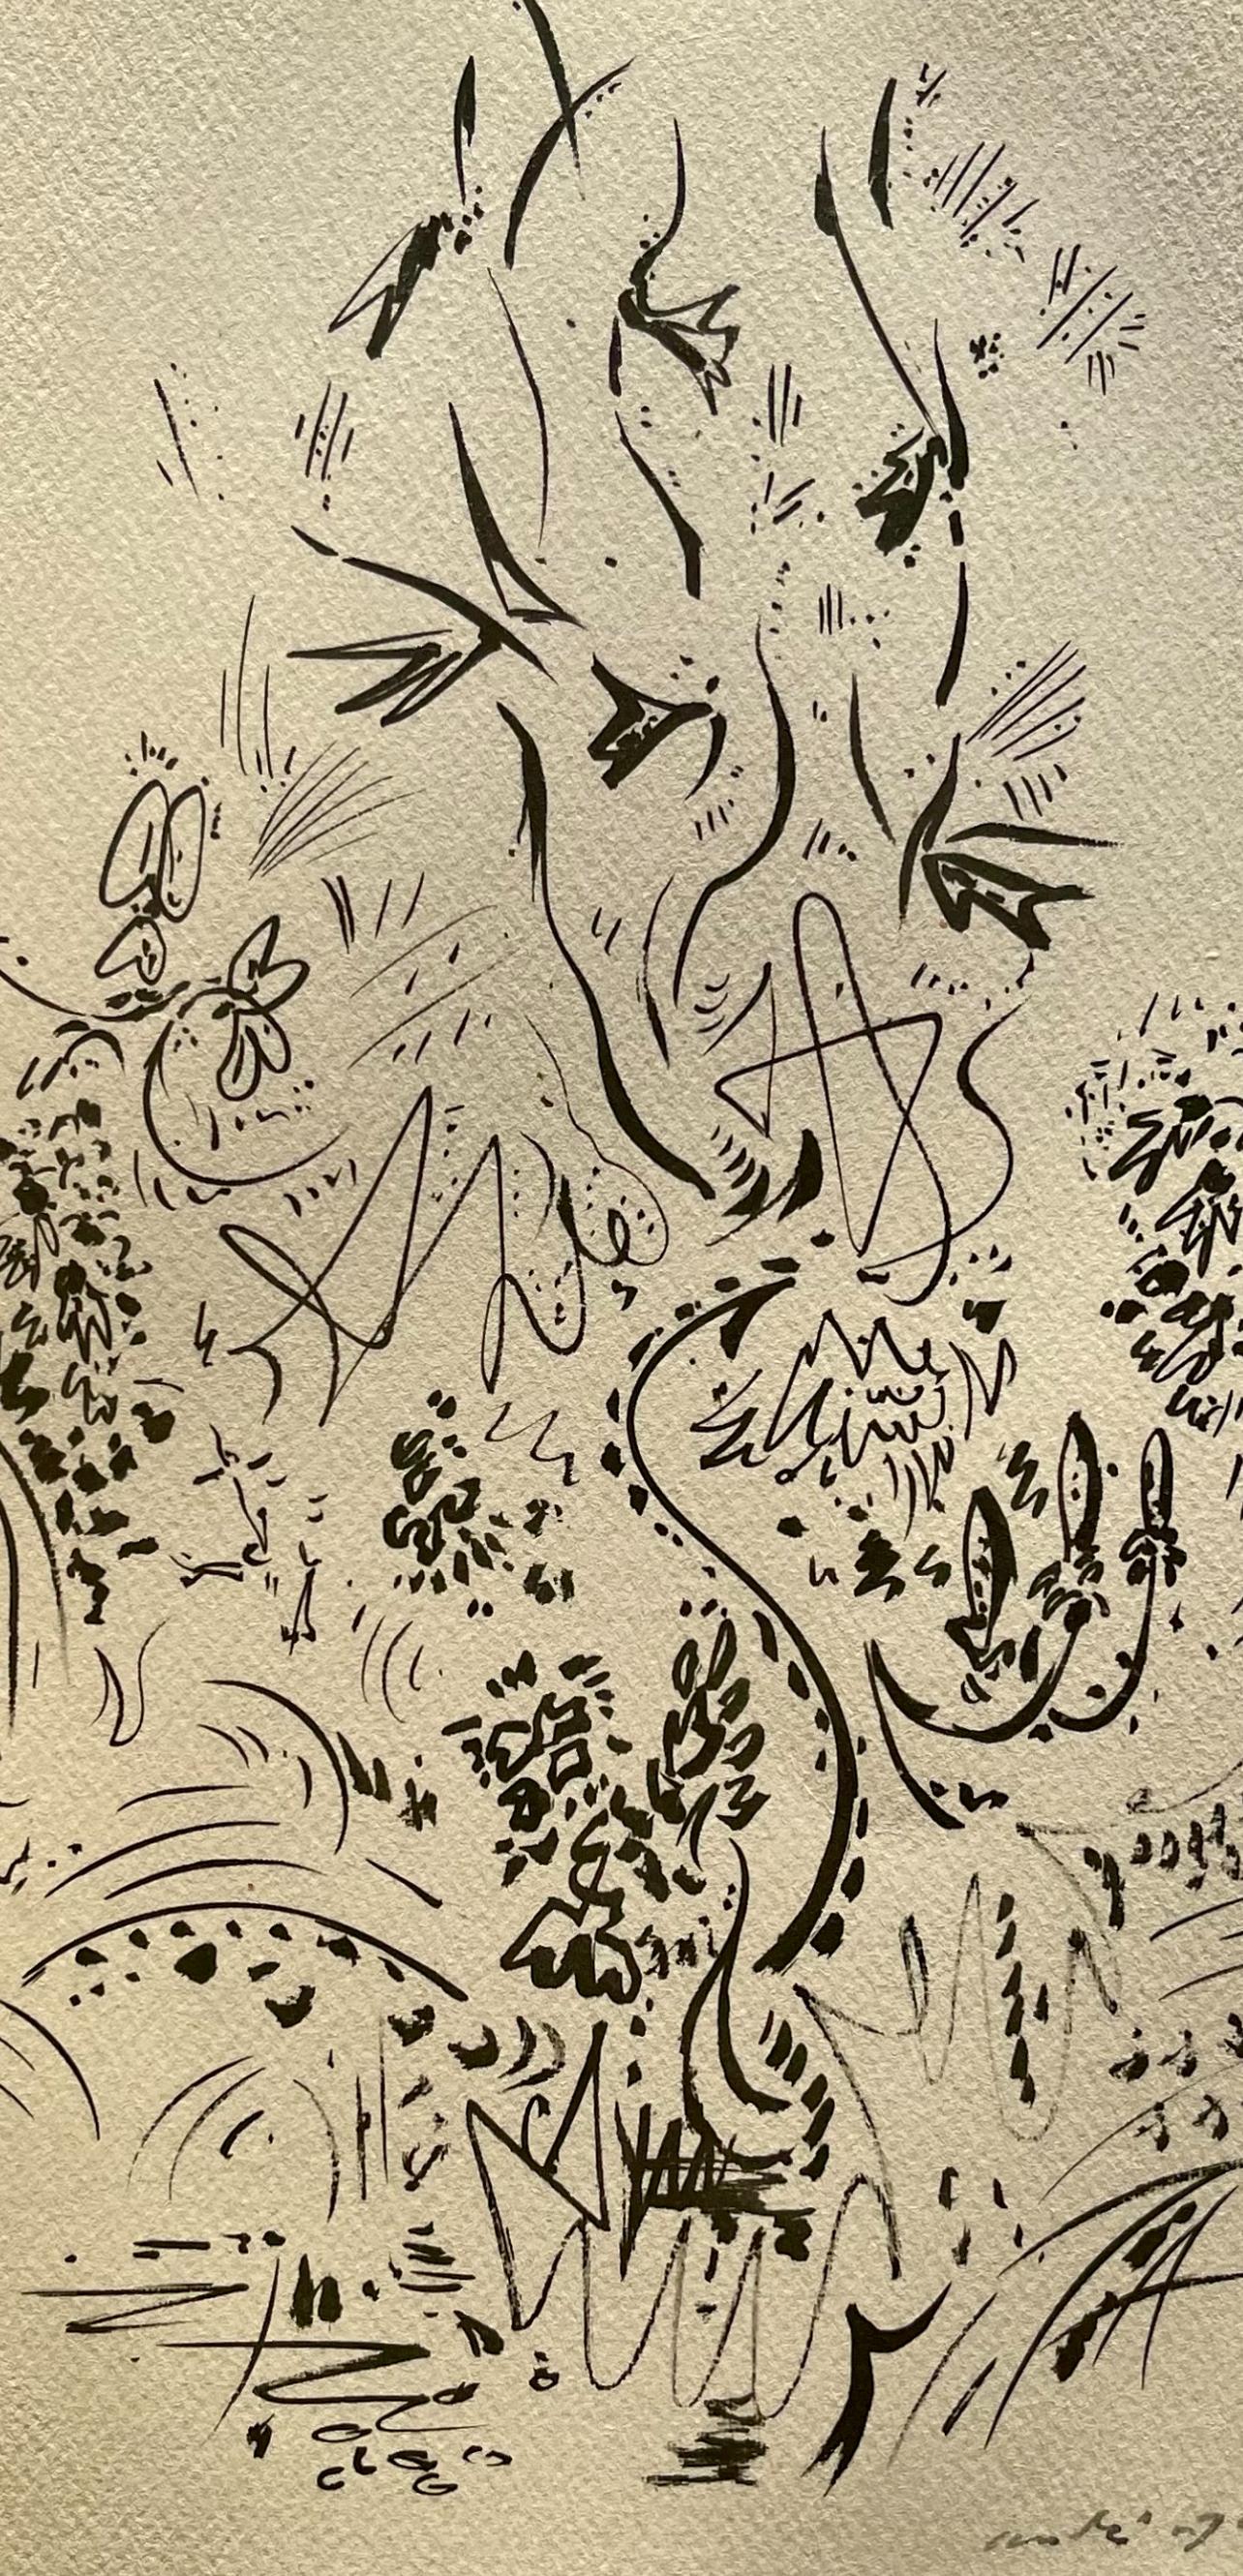 Masson, Herbes et fleurs, Masson Dessins (after) - Print by André Masson